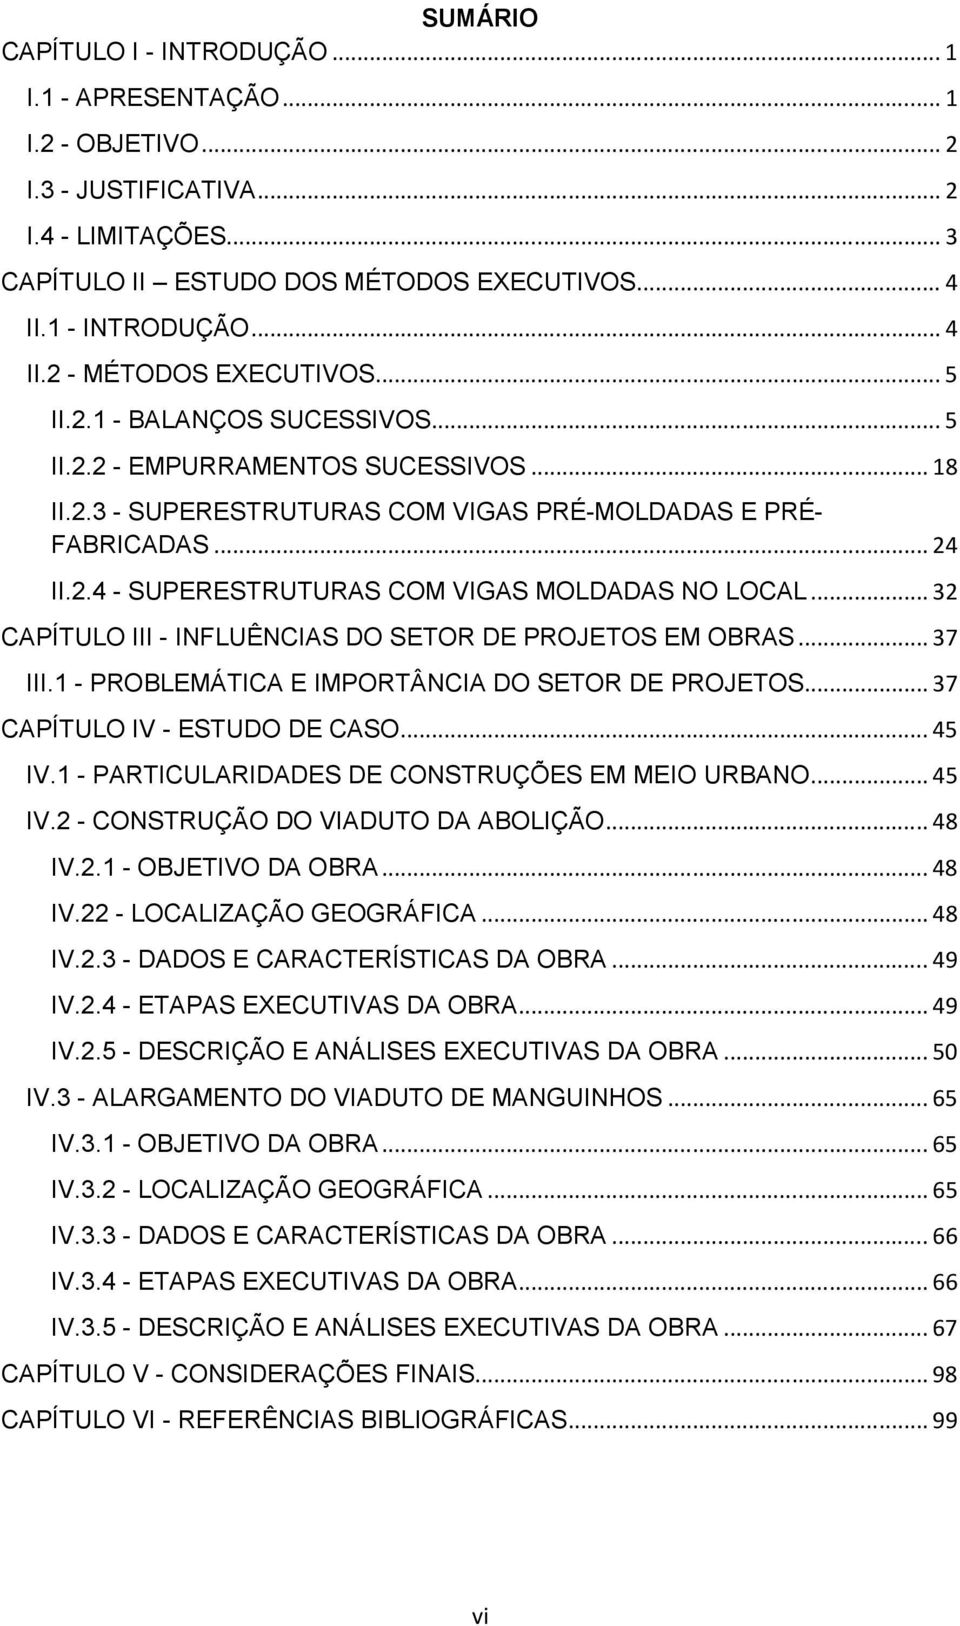 2.4 - SUPERESTRUTURAS COM VIGAS MOLDADAS NO LOCAL... 32 CAPÍTULO III - INFLUÊNCIAS DO SETOR DE PROJETOS EM OBRAS... 37 III.1 - PROBLEMÁTICA E IMPORTÂNCIA DO SETOR DE PROJETOS.